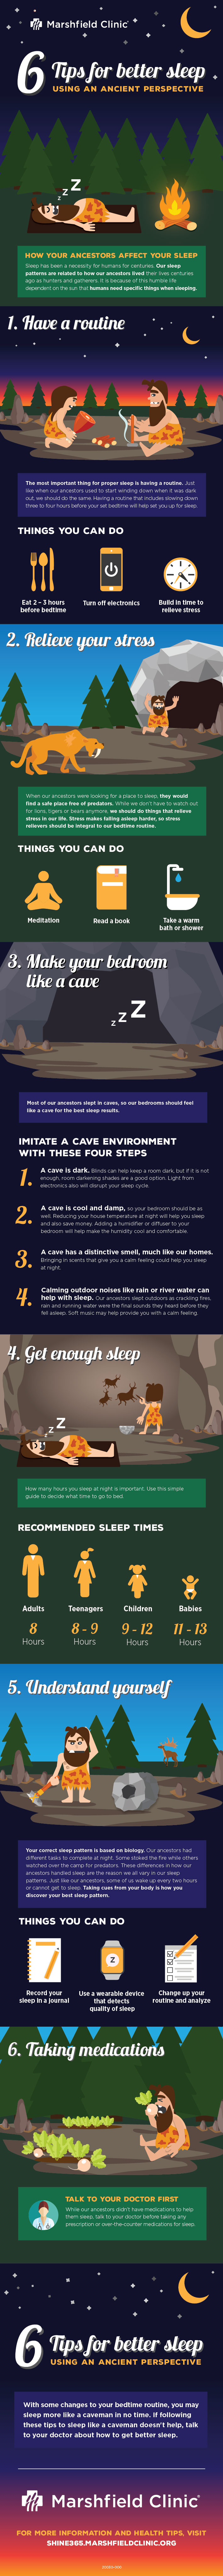 6 tips for better sleep - Infographic